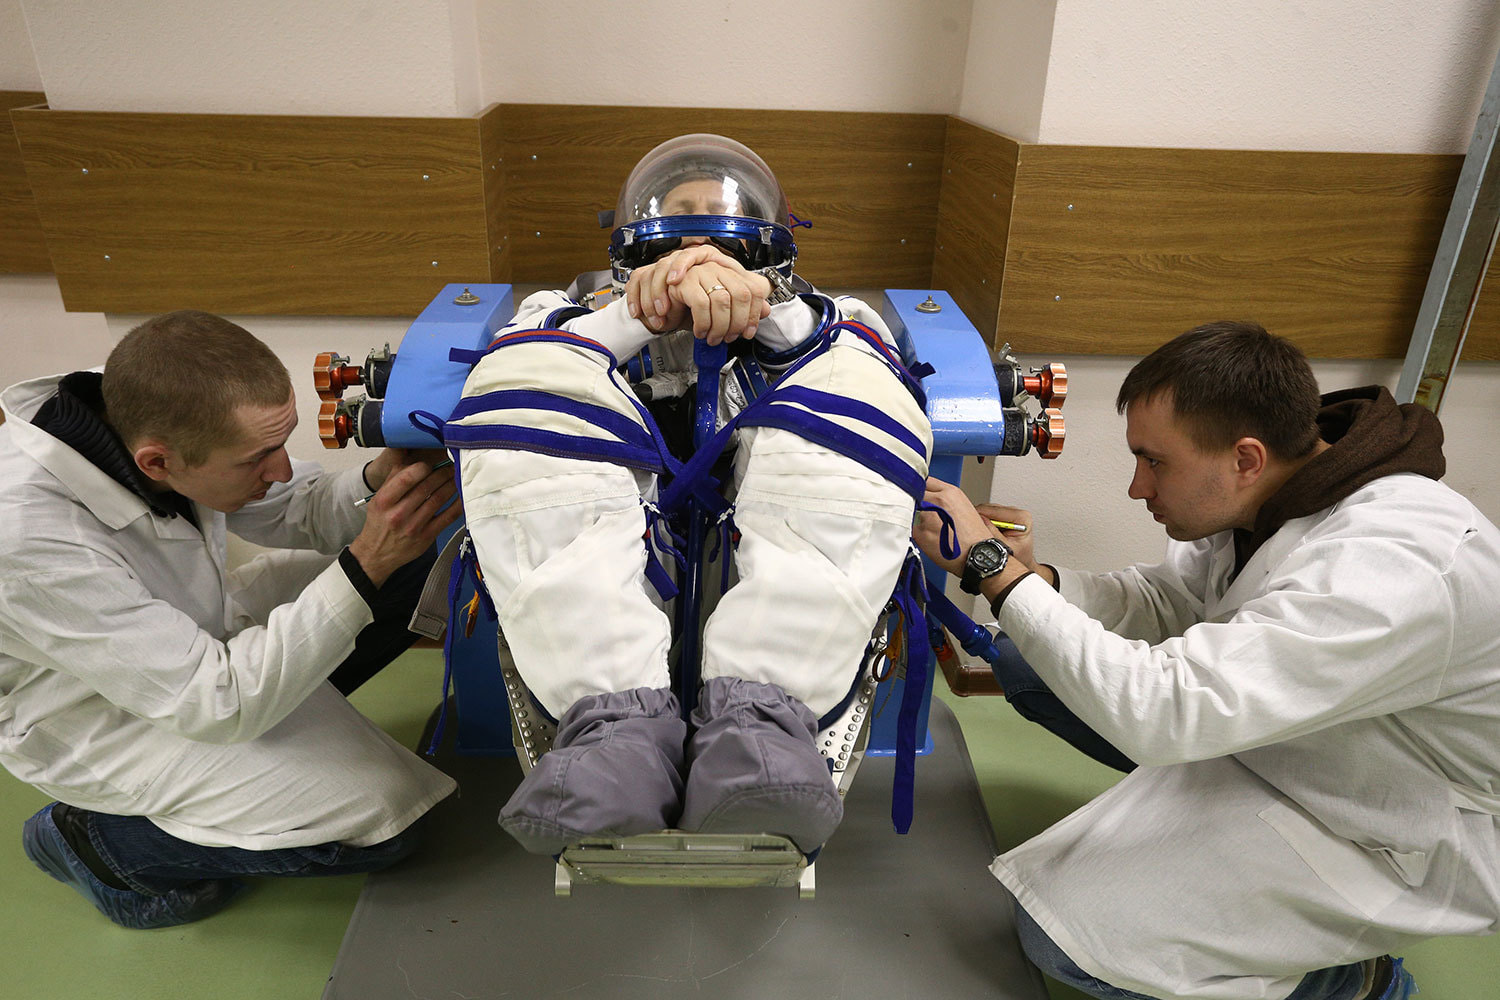 Космонавт, летящий в космос впервые, должен провести лежа в скафандре 125 минут – максимальное время нахождения в скафандре в случае нештатной ситуации. На Земле такая тренировка переносится труднее из-за силы притяжения